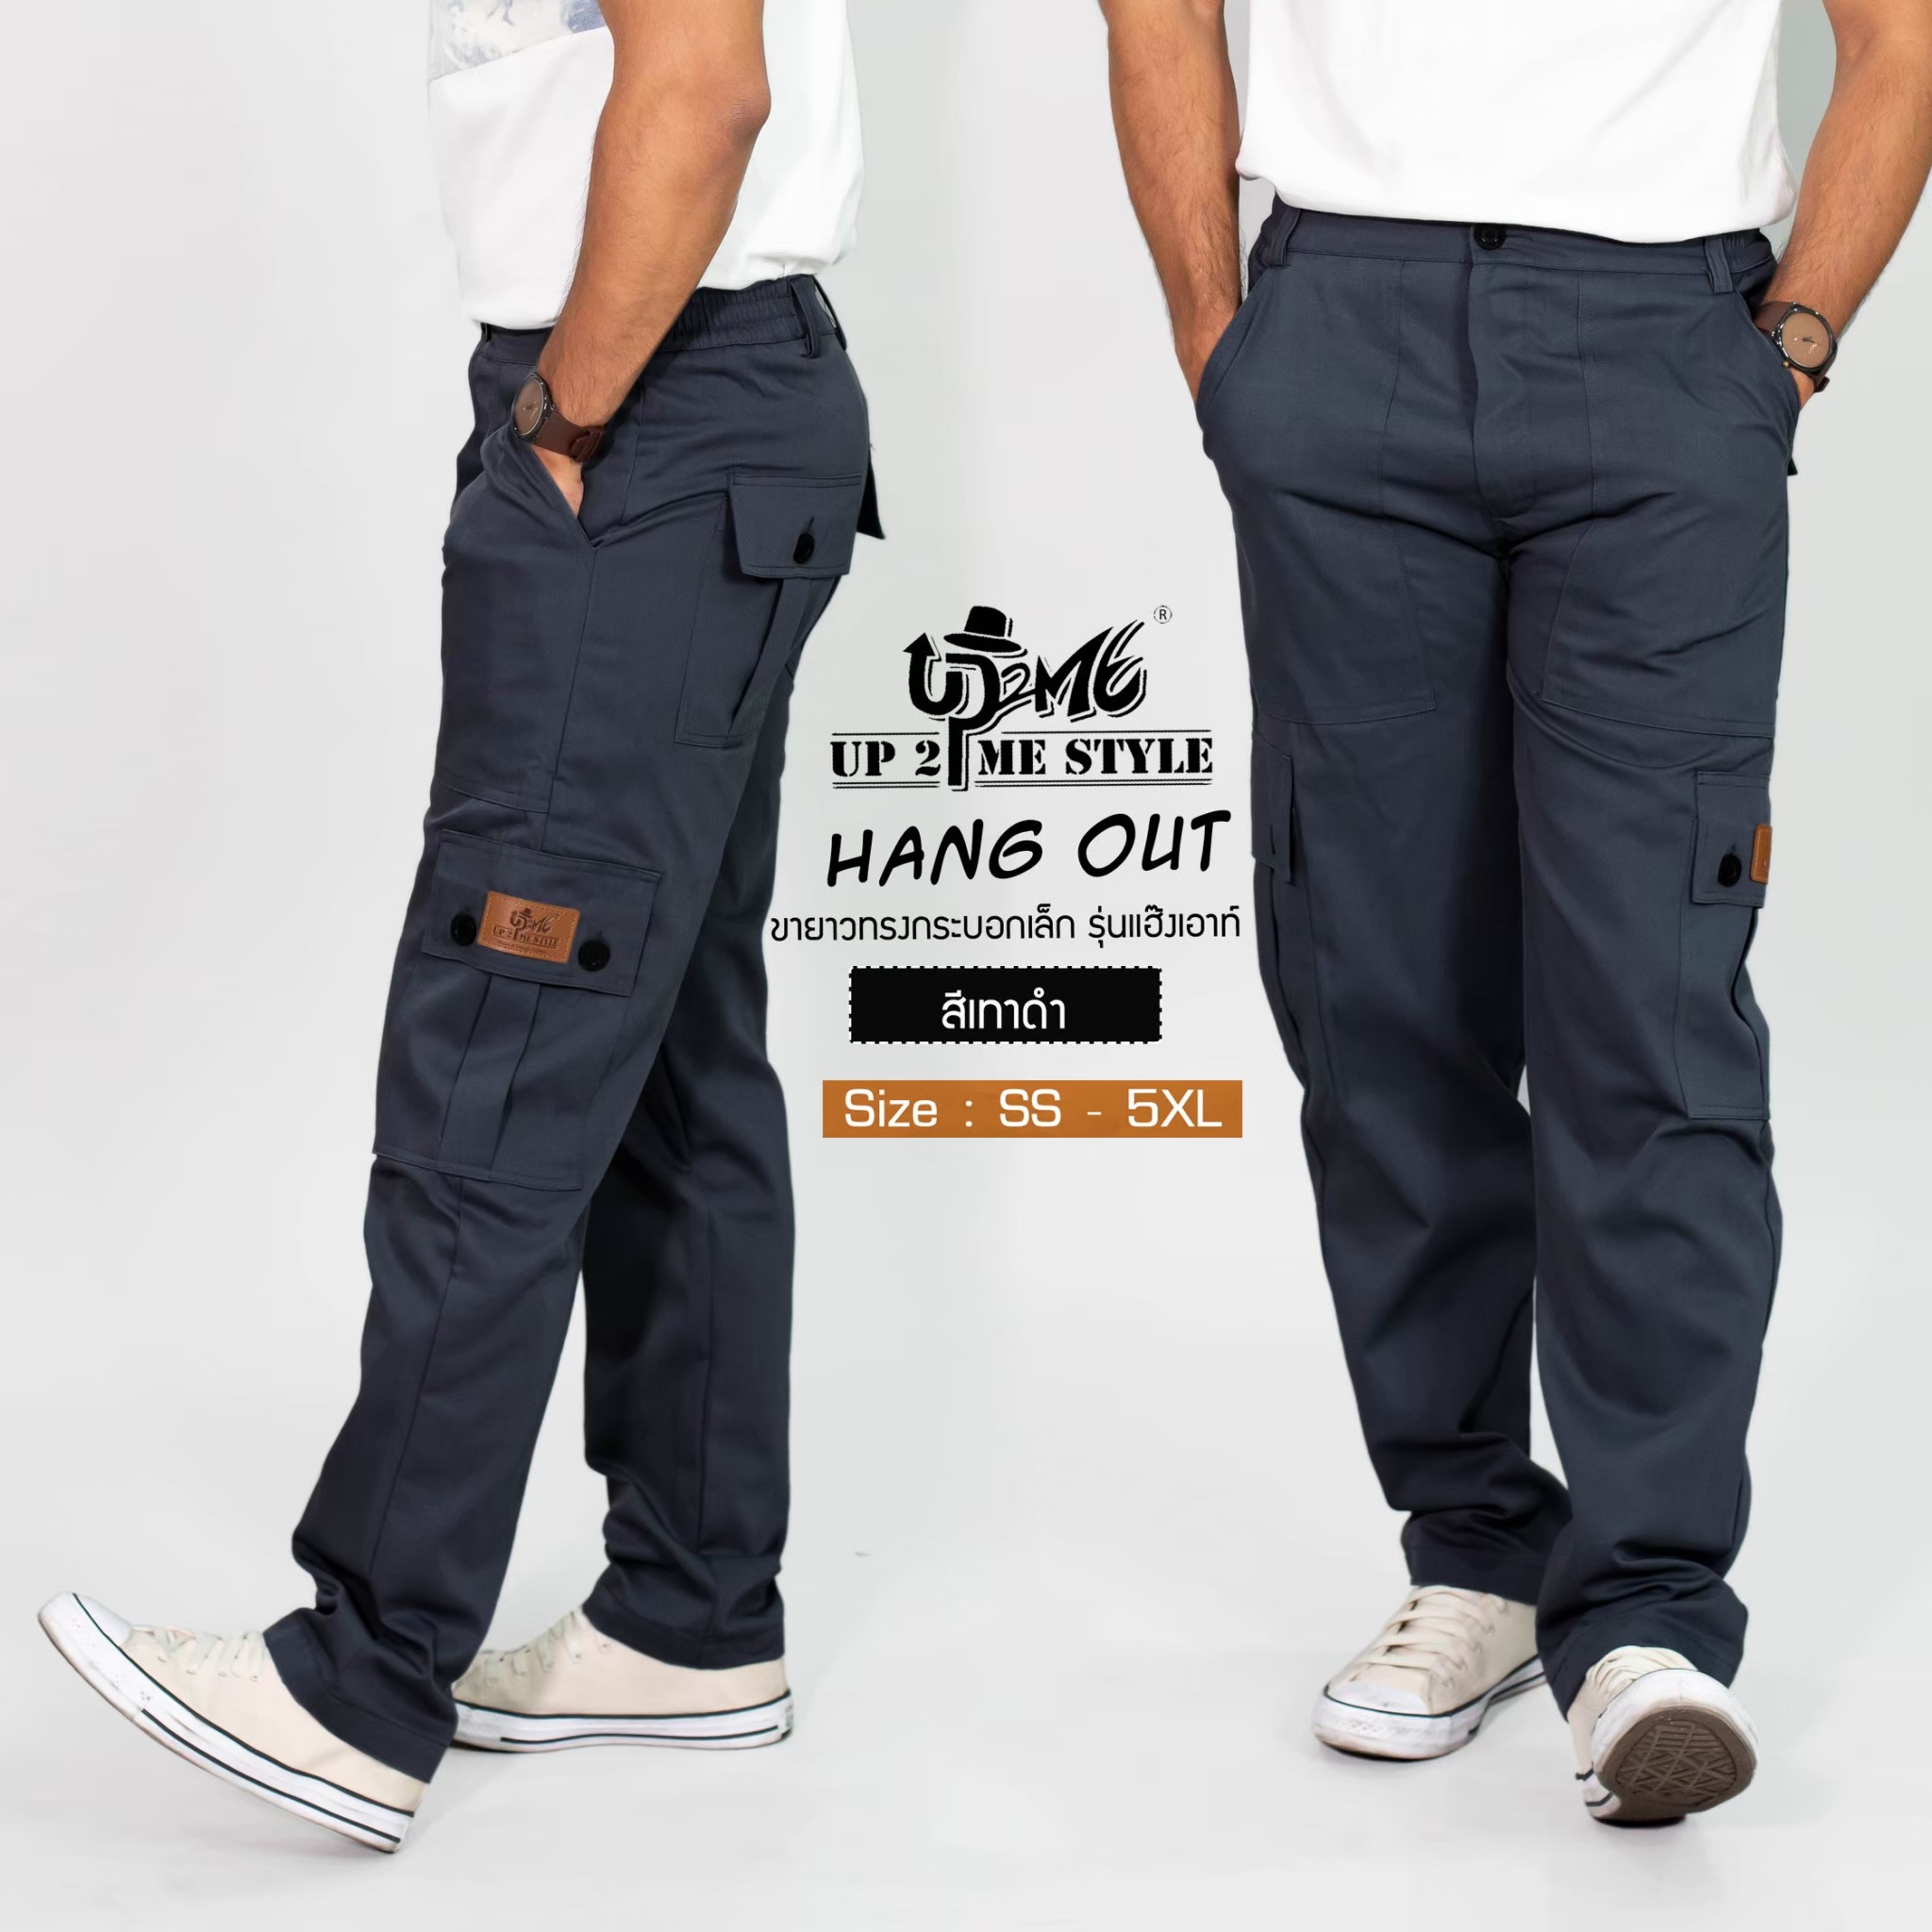 กางเกงคาร์โก้ UP2ME รุ่น HANGOUT ขายาว (สีเทาดำ) ทรงกระบอกเล็ก เอว 26 - 48นิ้ว (SS - 5XL) กางเกงช่าง กางเกงลุยป่า กระเป๋าข้าง กางเกงผู้ชาย